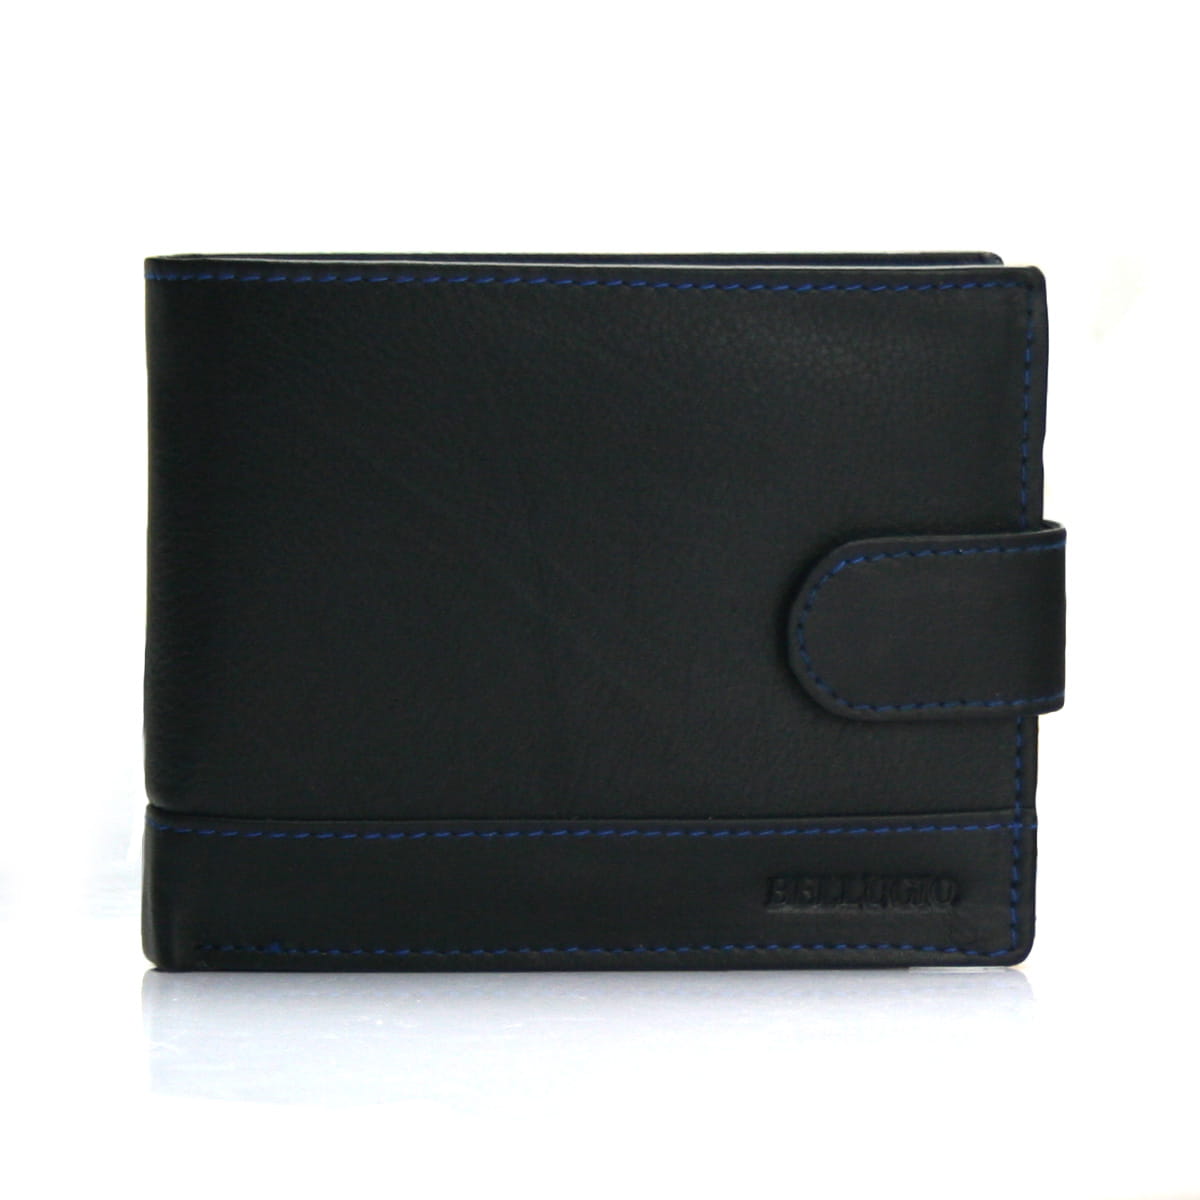 Pánská kožená peněženka Bellugio Sam, černo-modrá